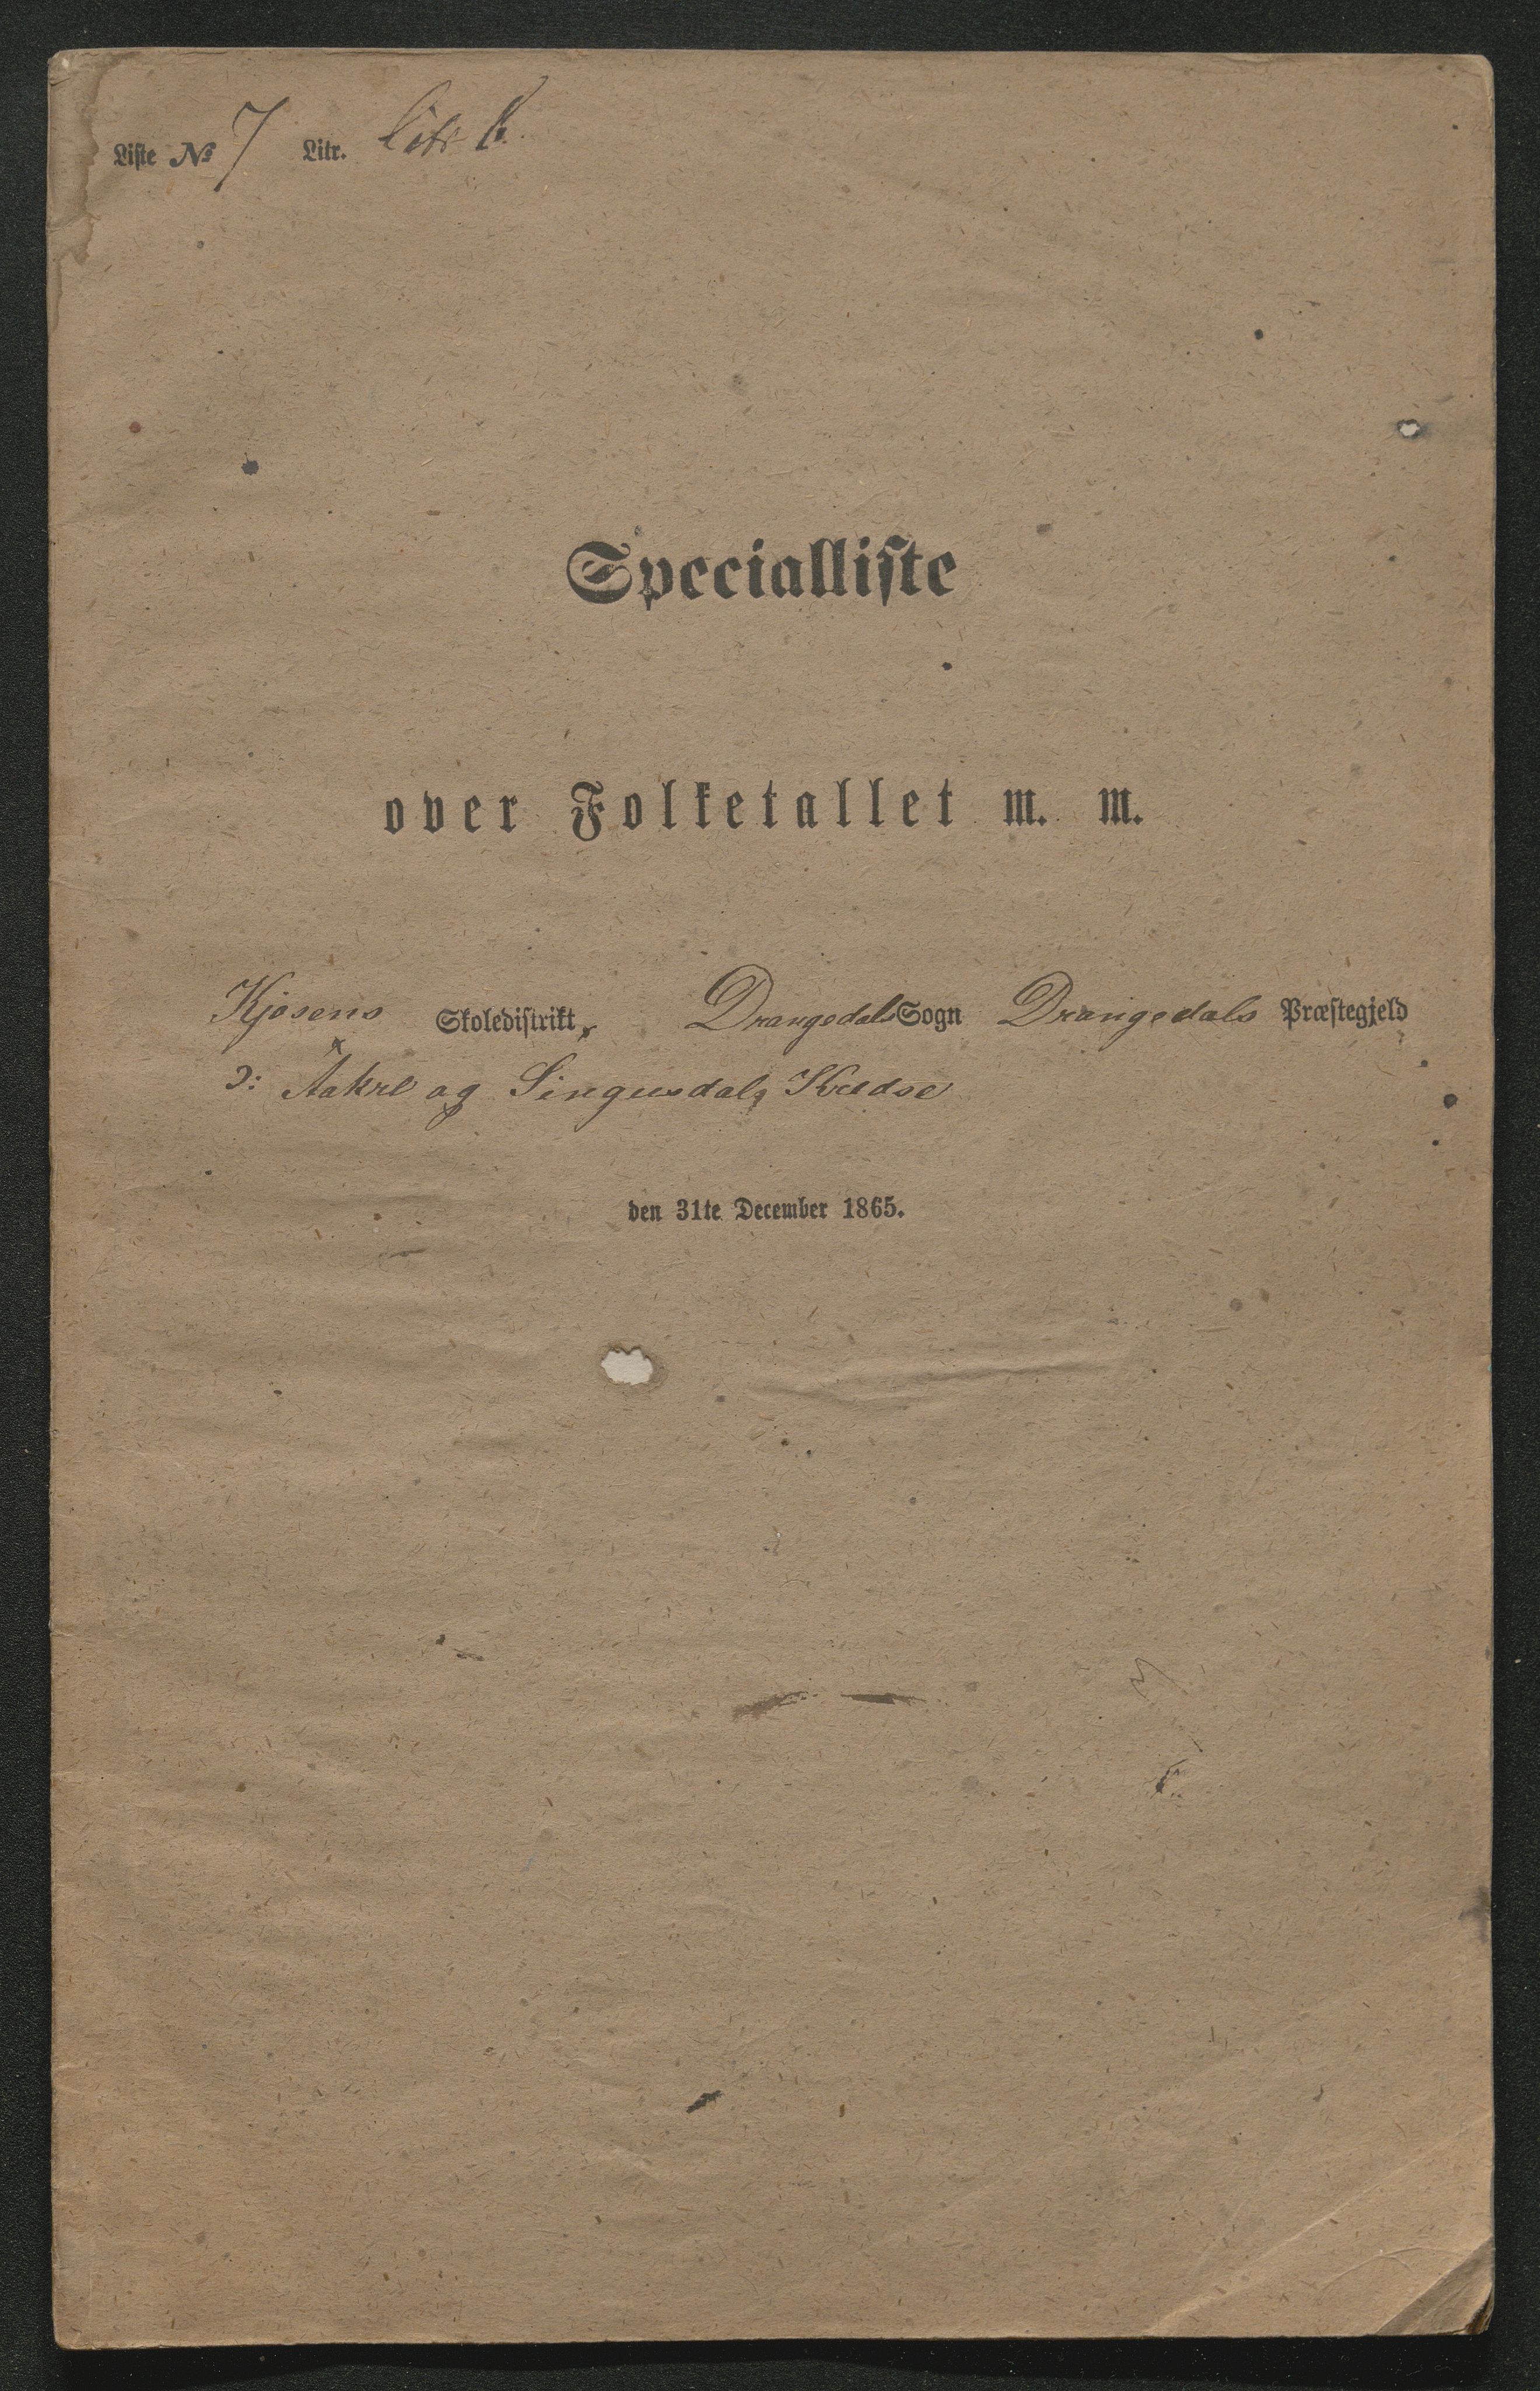 SAKO, Fantetellingen i Drangedal 1865, 1865, s. 115